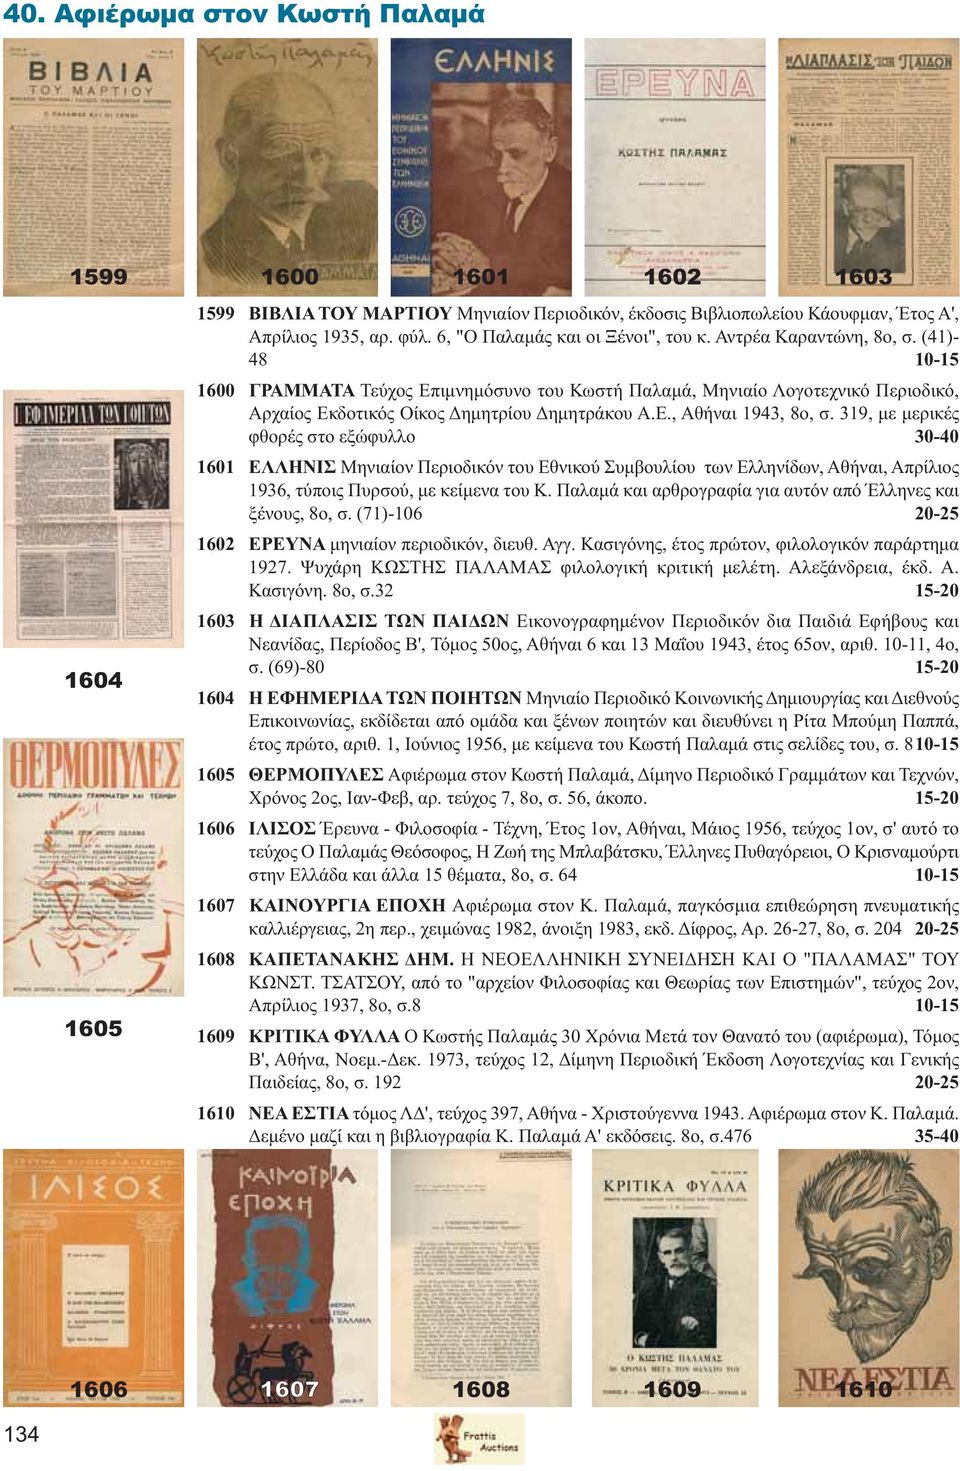 319, με μερικές φθορές στο εξώφυλλο 30-40 1601 ΕΛΛΗΝΙΣ Μηνιαίον Περιοδικόν του Εθνικού Συμβουλίου των Ελληνίδων, Αθήναι, Απρίλιος 1936, τύποις Πυρσού, με κείμενα του Κ.